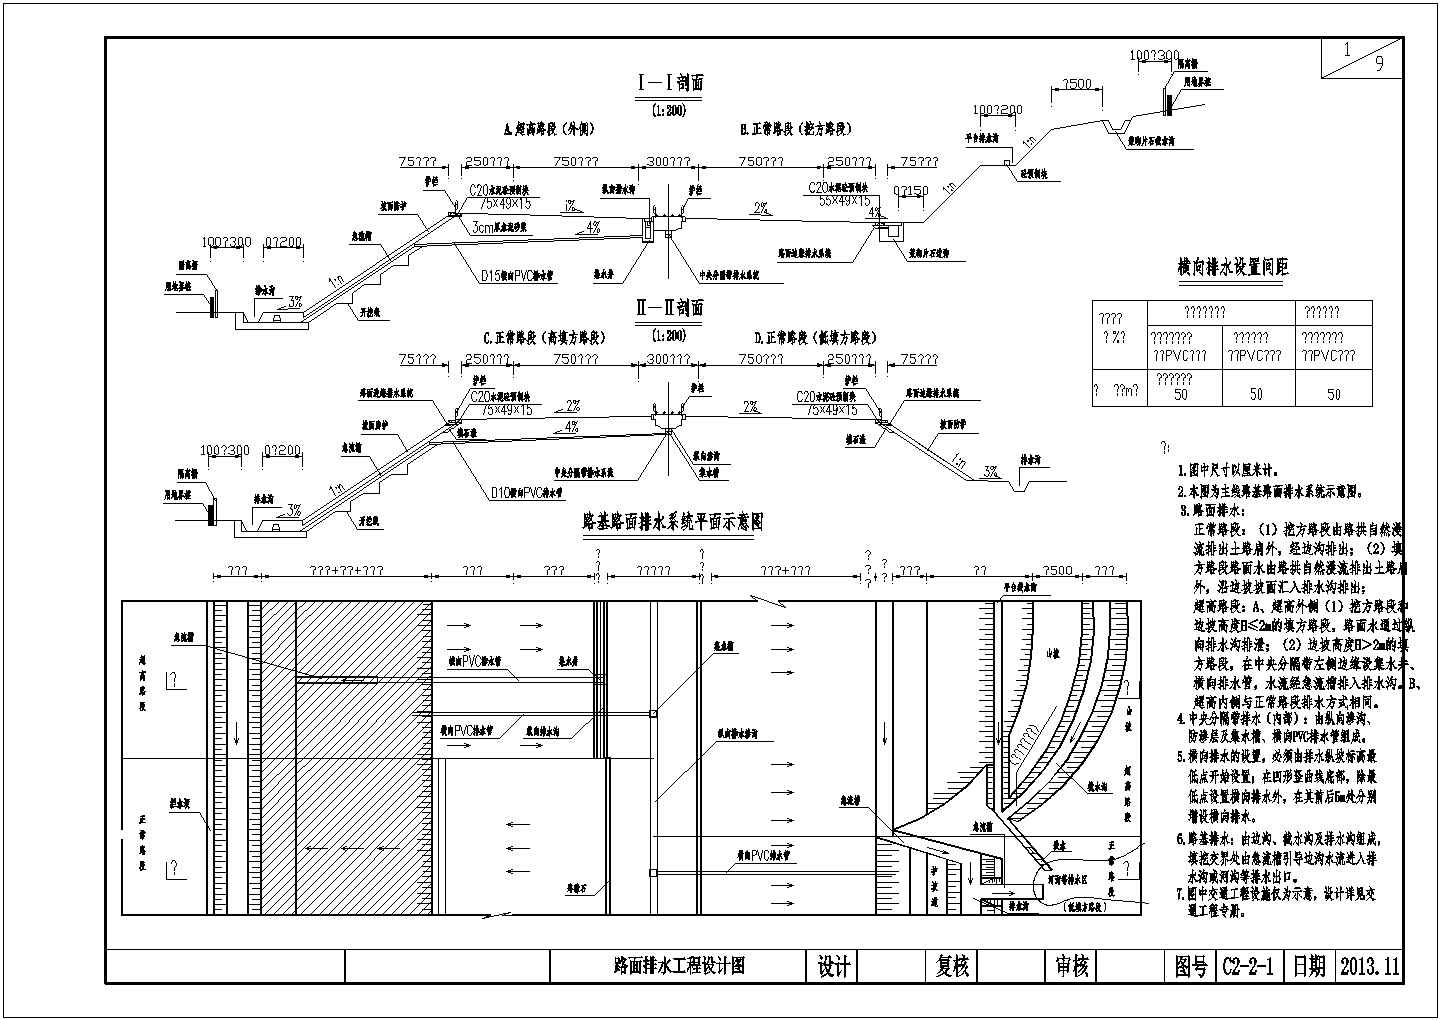 【贵州】双向四车道高速公路路基路面排水设计图